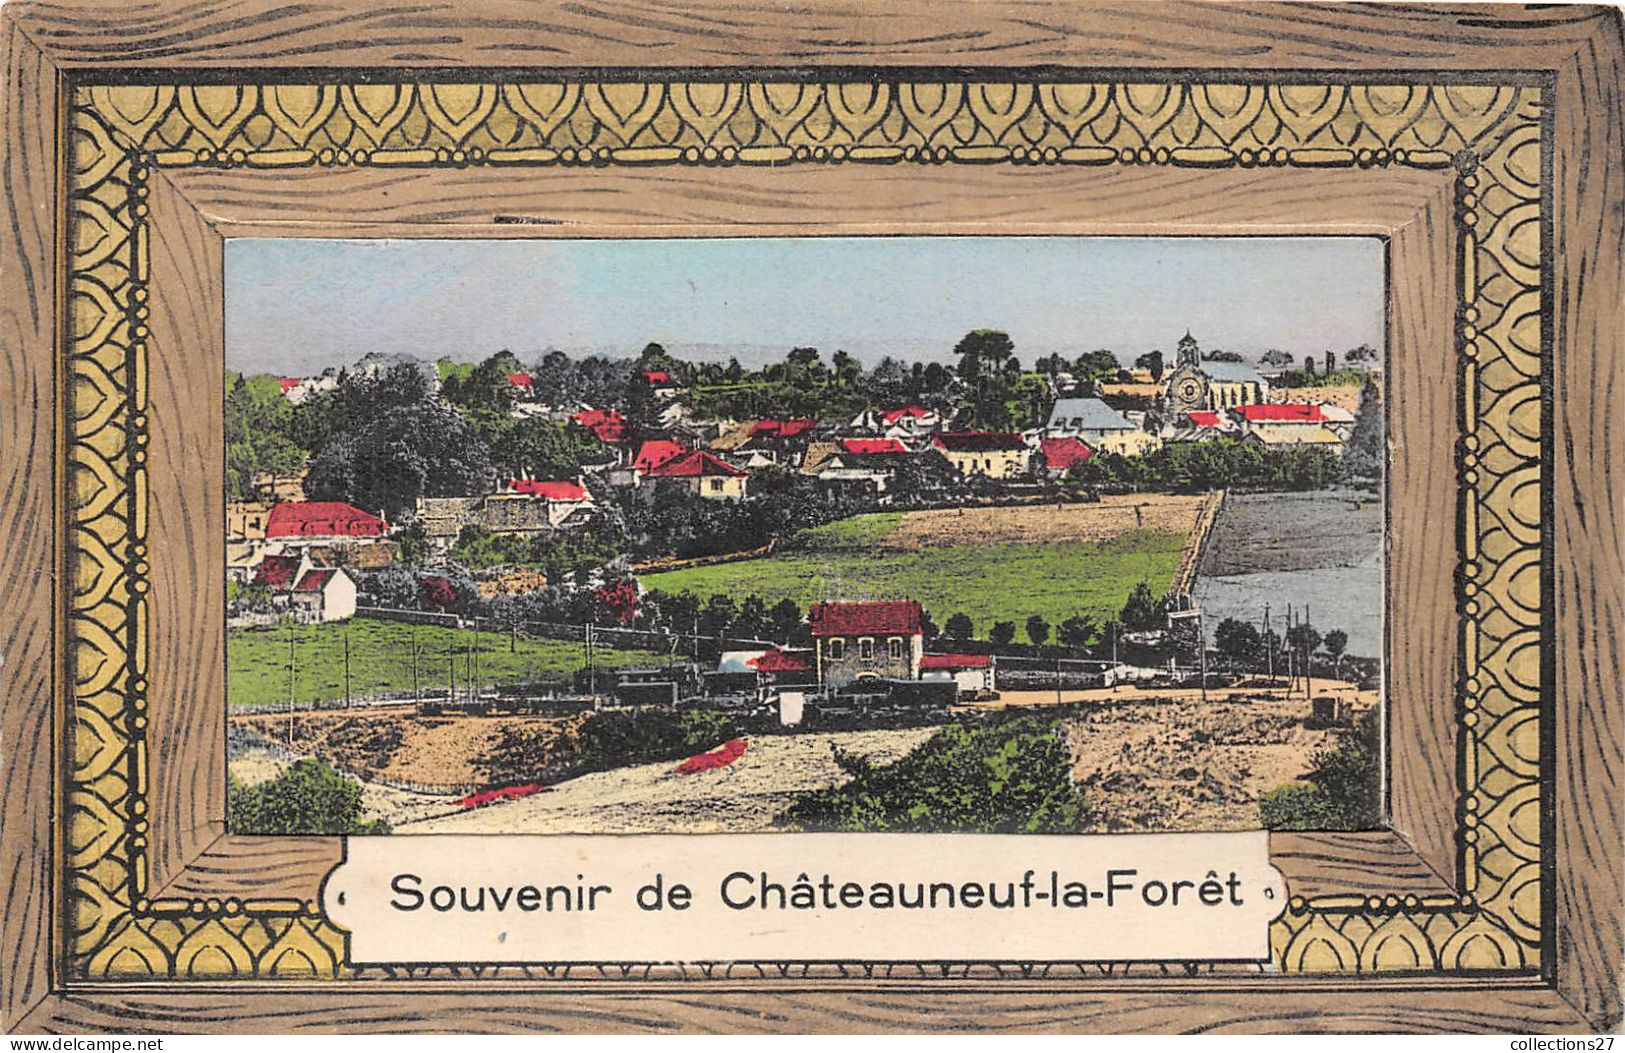 87-CHATEAUNEUF-LA-FORET- CARTE A SYSTEME DEPLIANTE SOUVENIR - Chateauneuf La Foret